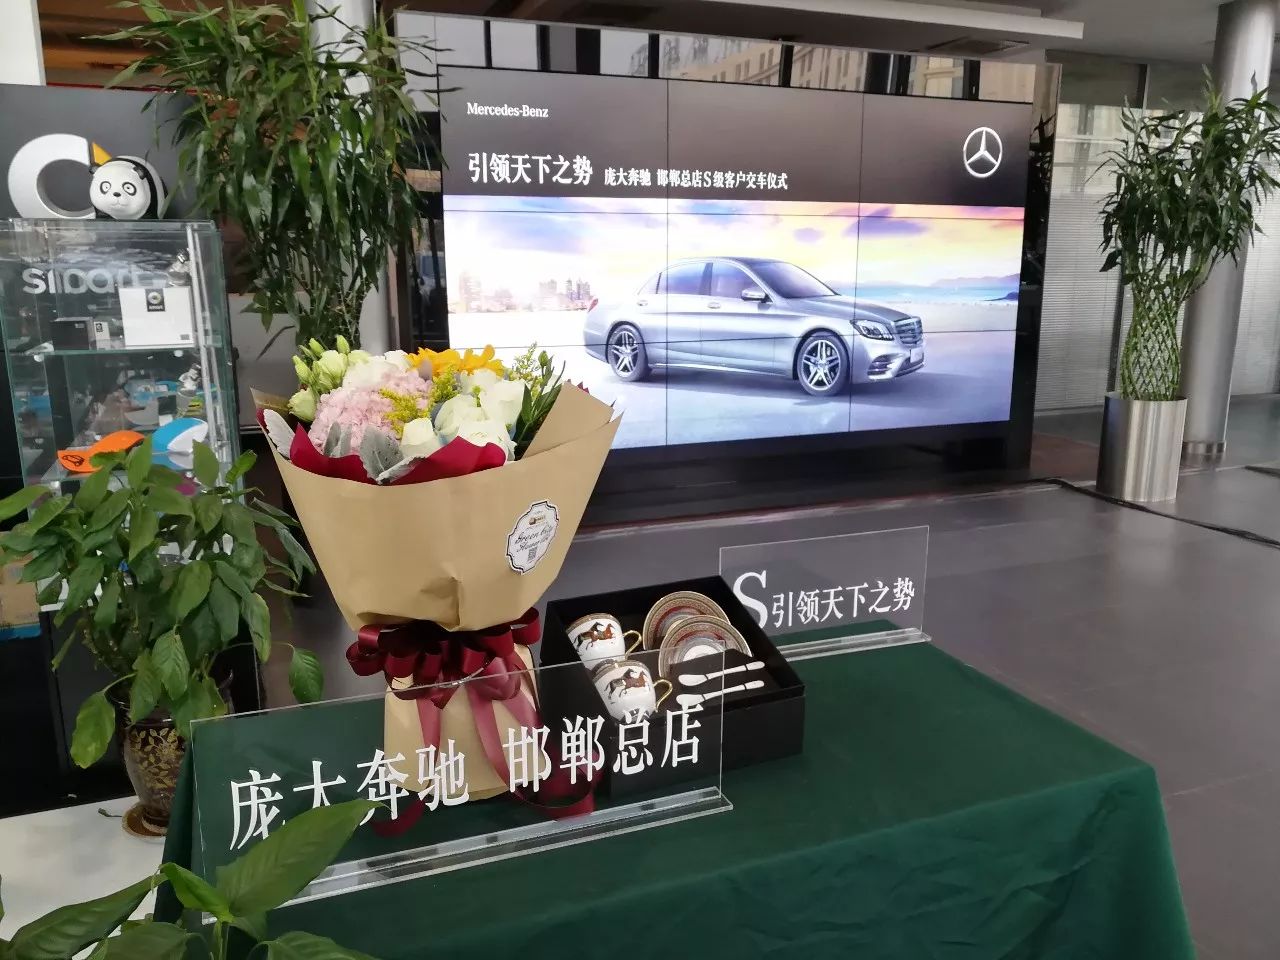 【庞大奔驰 邯郸总店】引领天下之势,梅赛德斯-奔驰s级轿车交车仪式